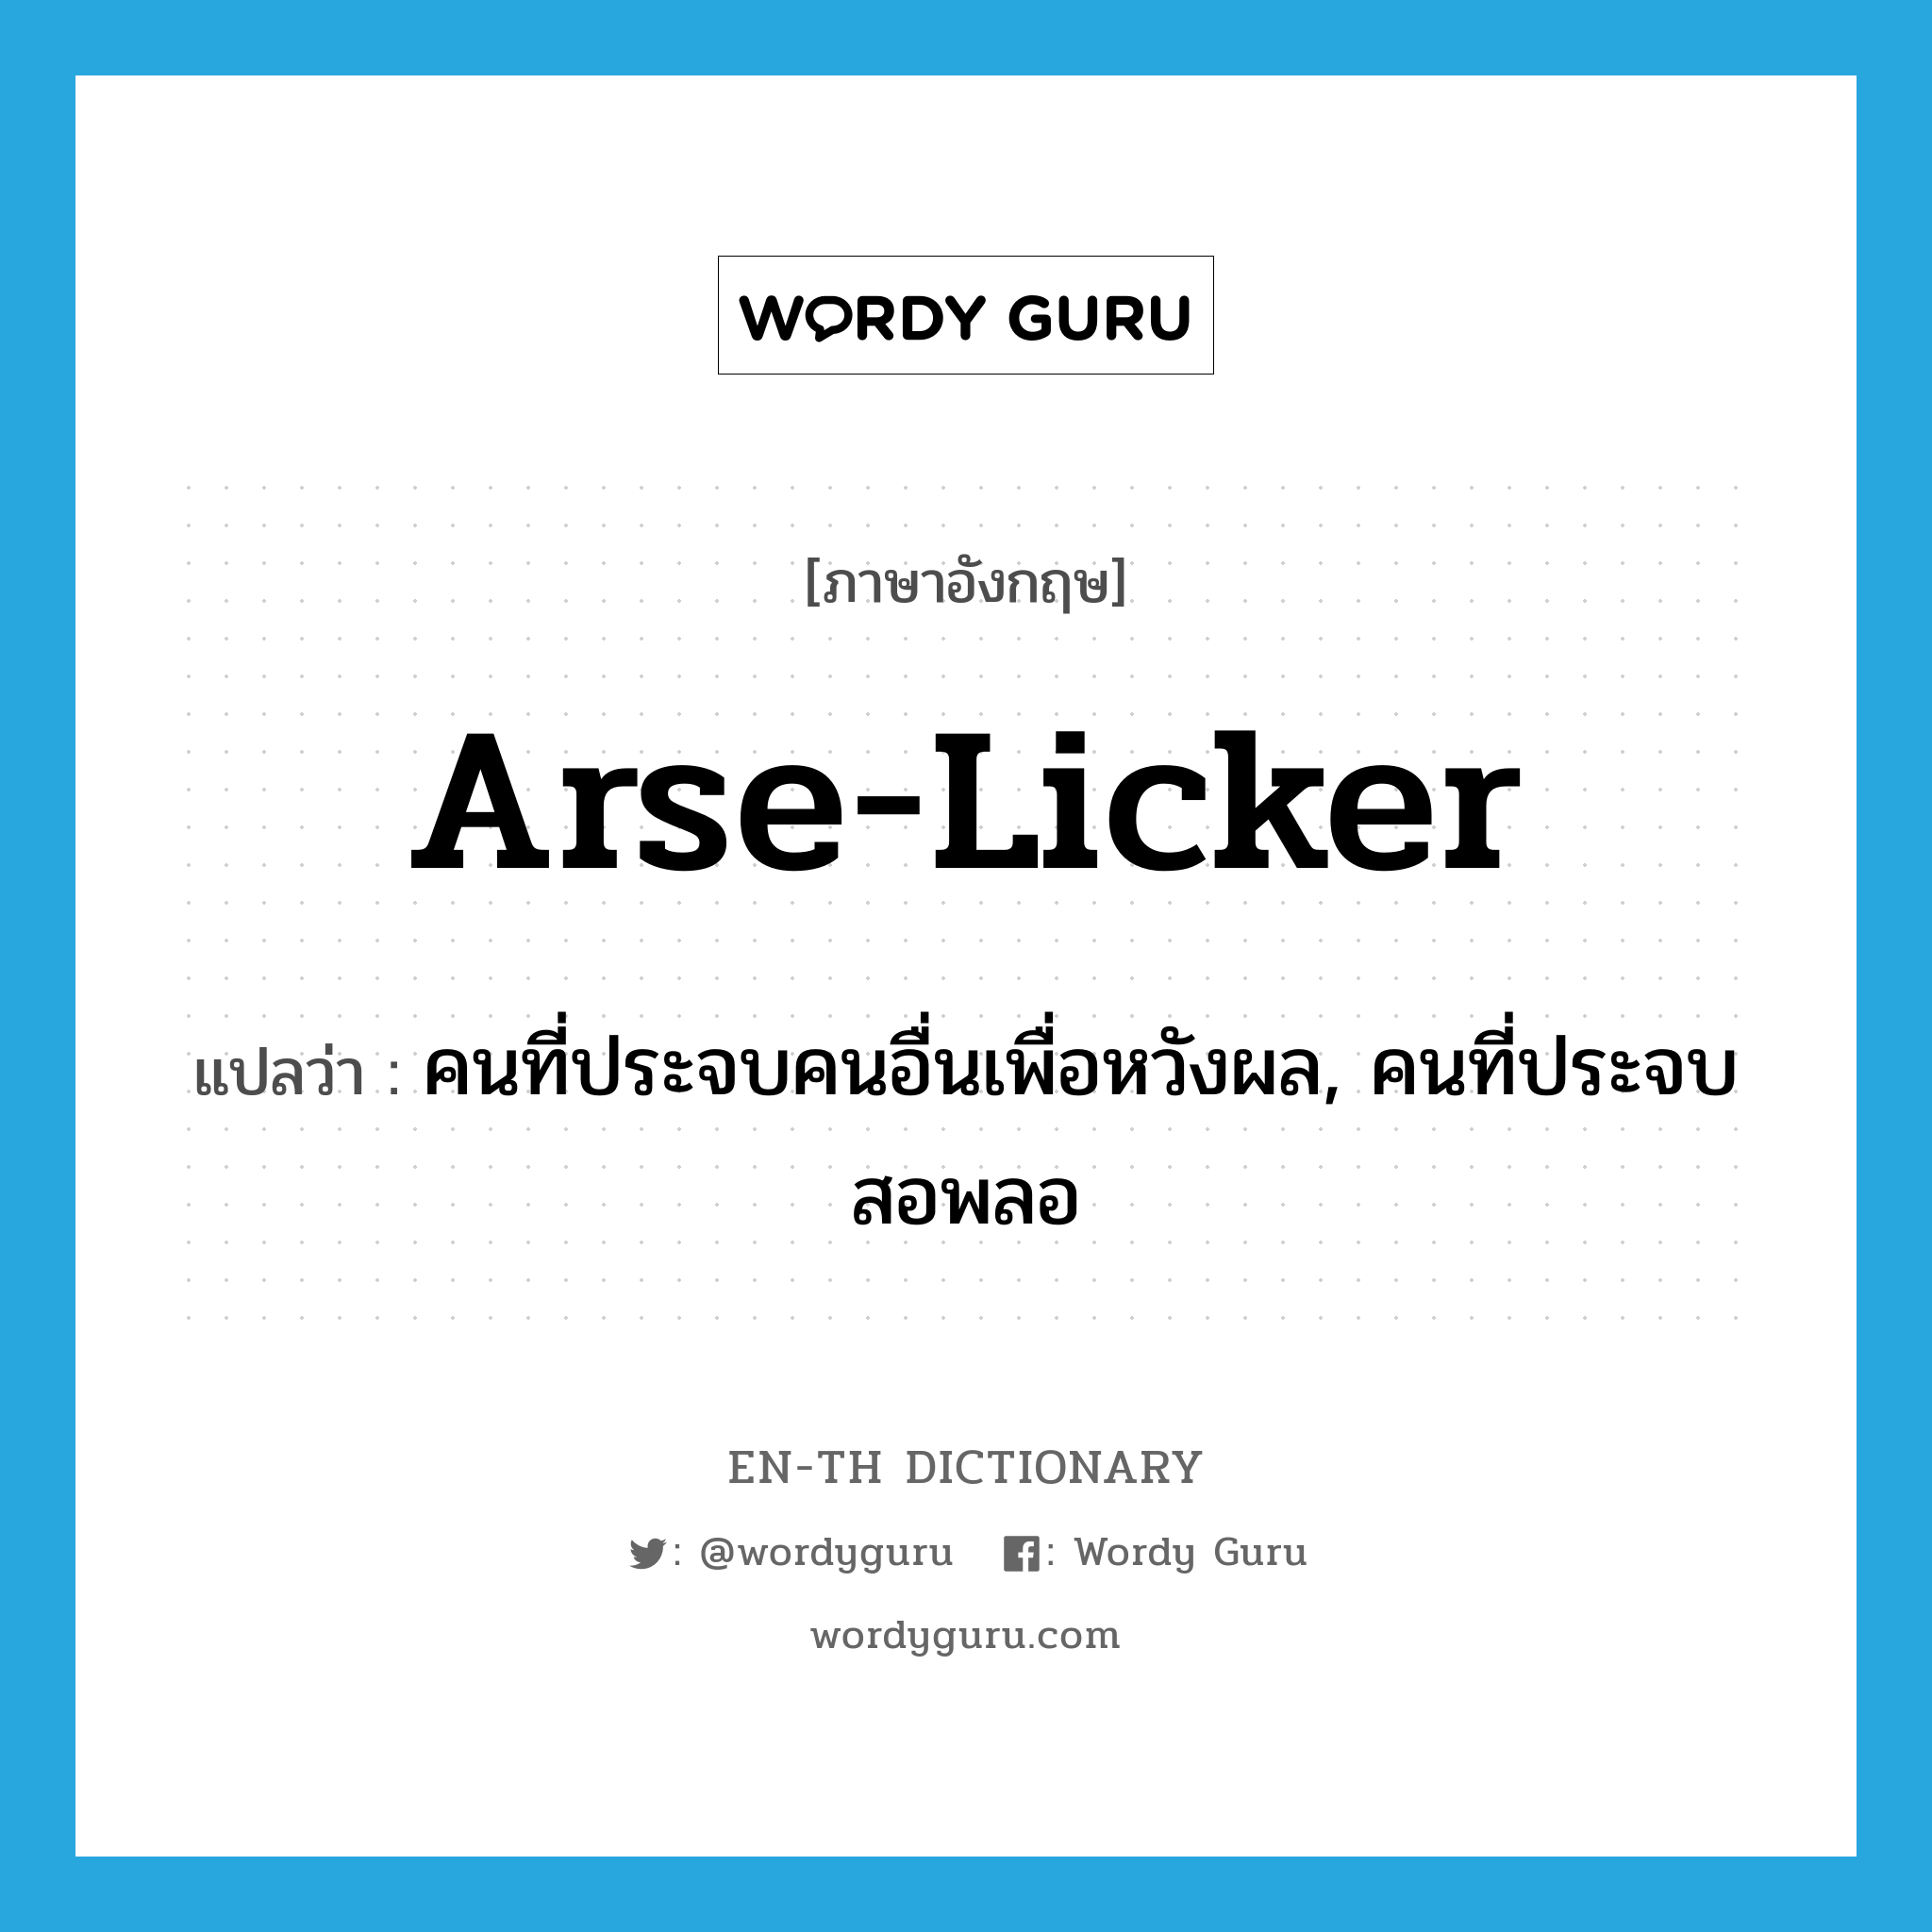 arse-licker แปลว่า? คำศัพท์ในกลุ่มประเภท SL, คำศัพท์ภาษาอังกฤษ arse-licker แปลว่า คนที่ประจบคนอื่นเพื่อหวังผล, คนที่ประจบสอพลอ ประเภท SL หมวด SL